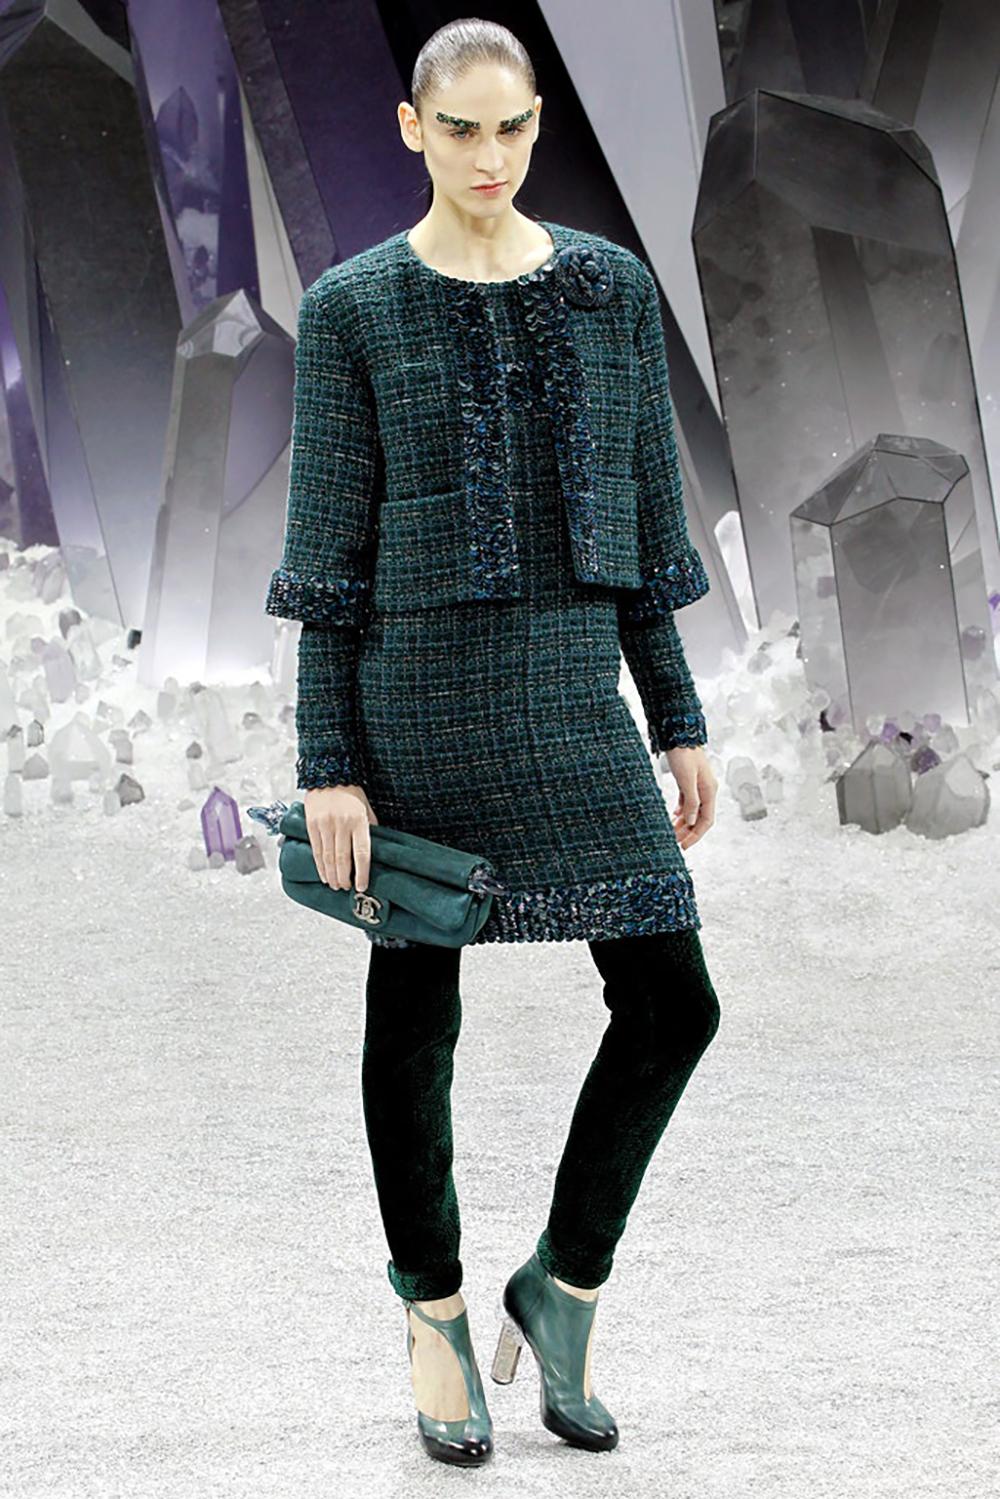 Prix boutique 7,680
Superbe robe en tweed Lesage vert émeraude de Chanel avec accents brodés.
- Breloque logo CC
- doublure en soie ton sur ton
Taille 36 FR. État impeccable.